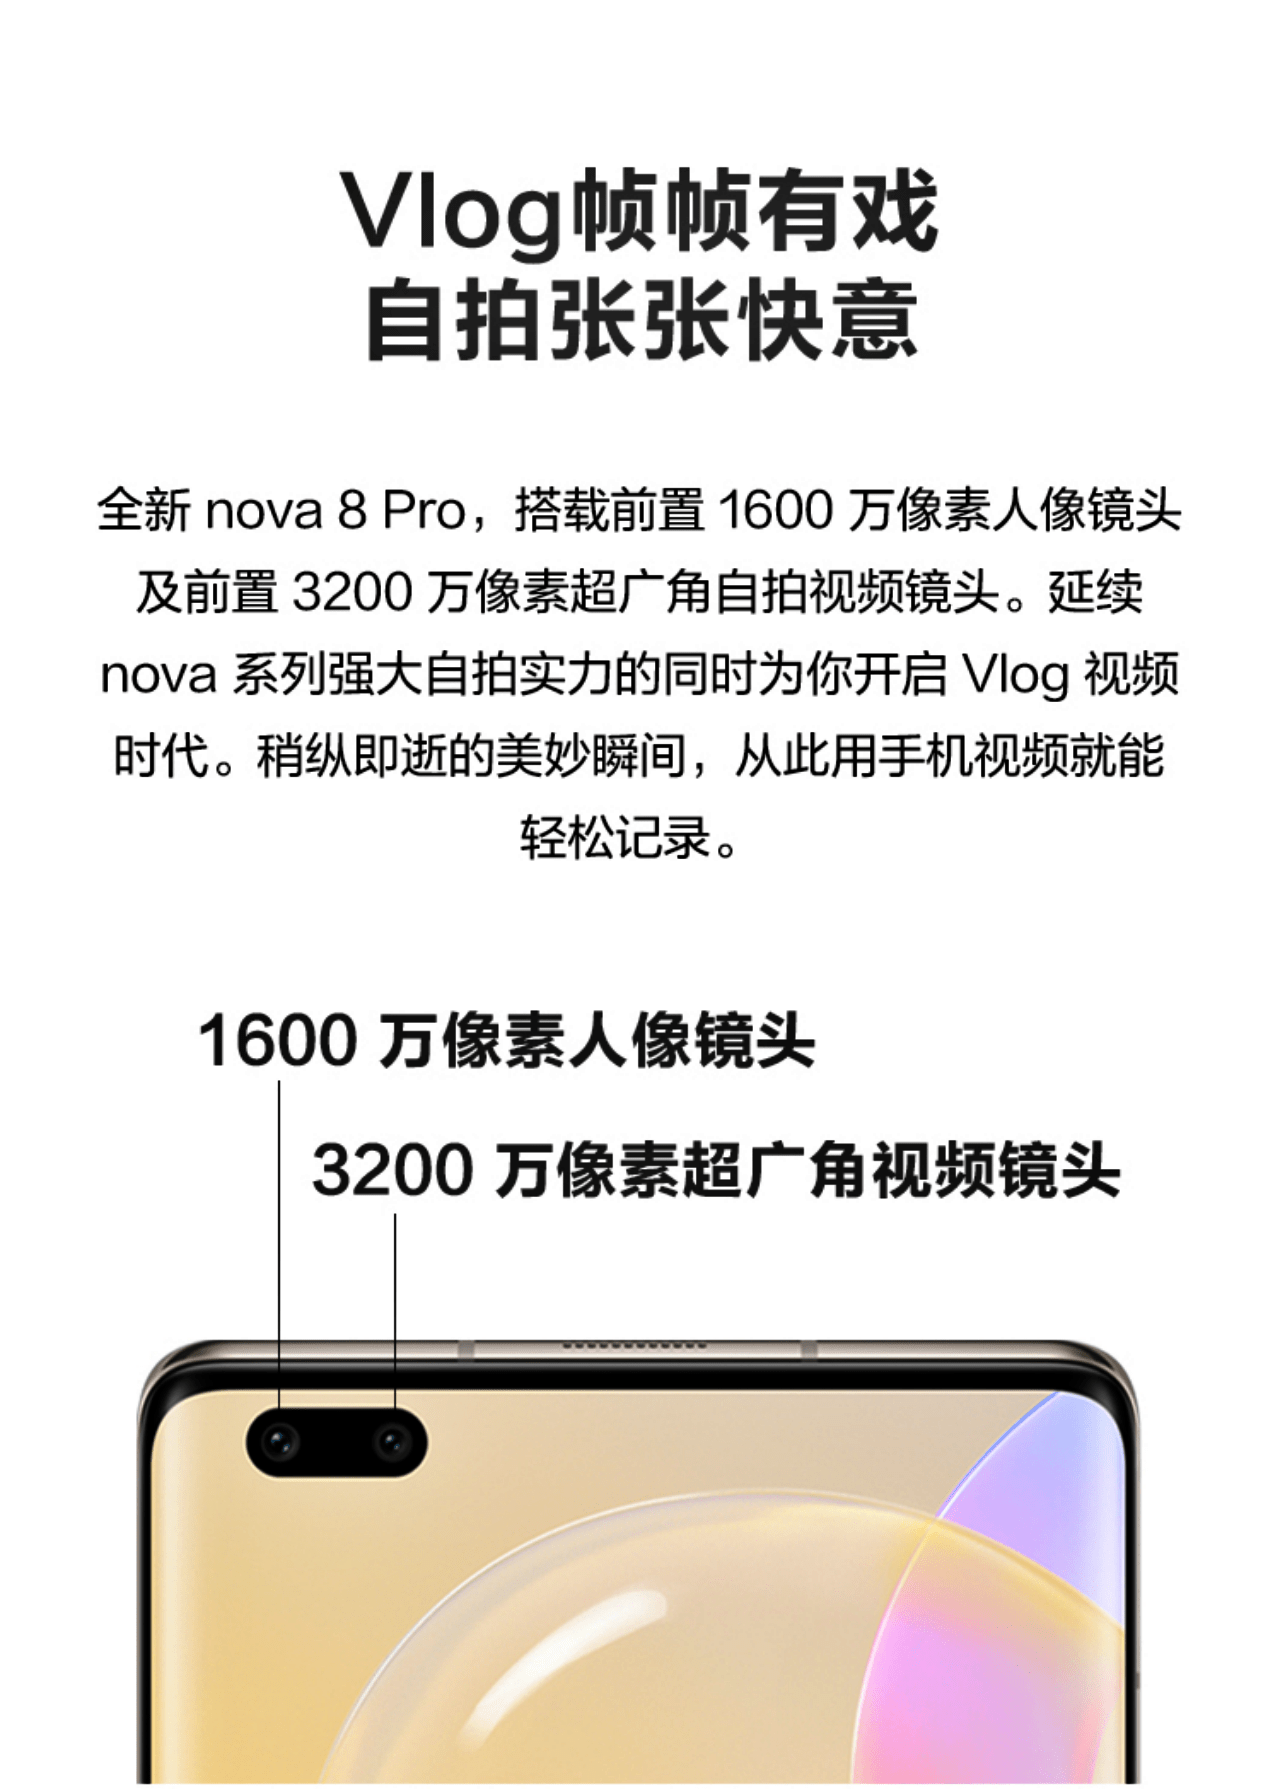 Huawei Nova 8 Pro King of Glory Edition đã chính thức công bố